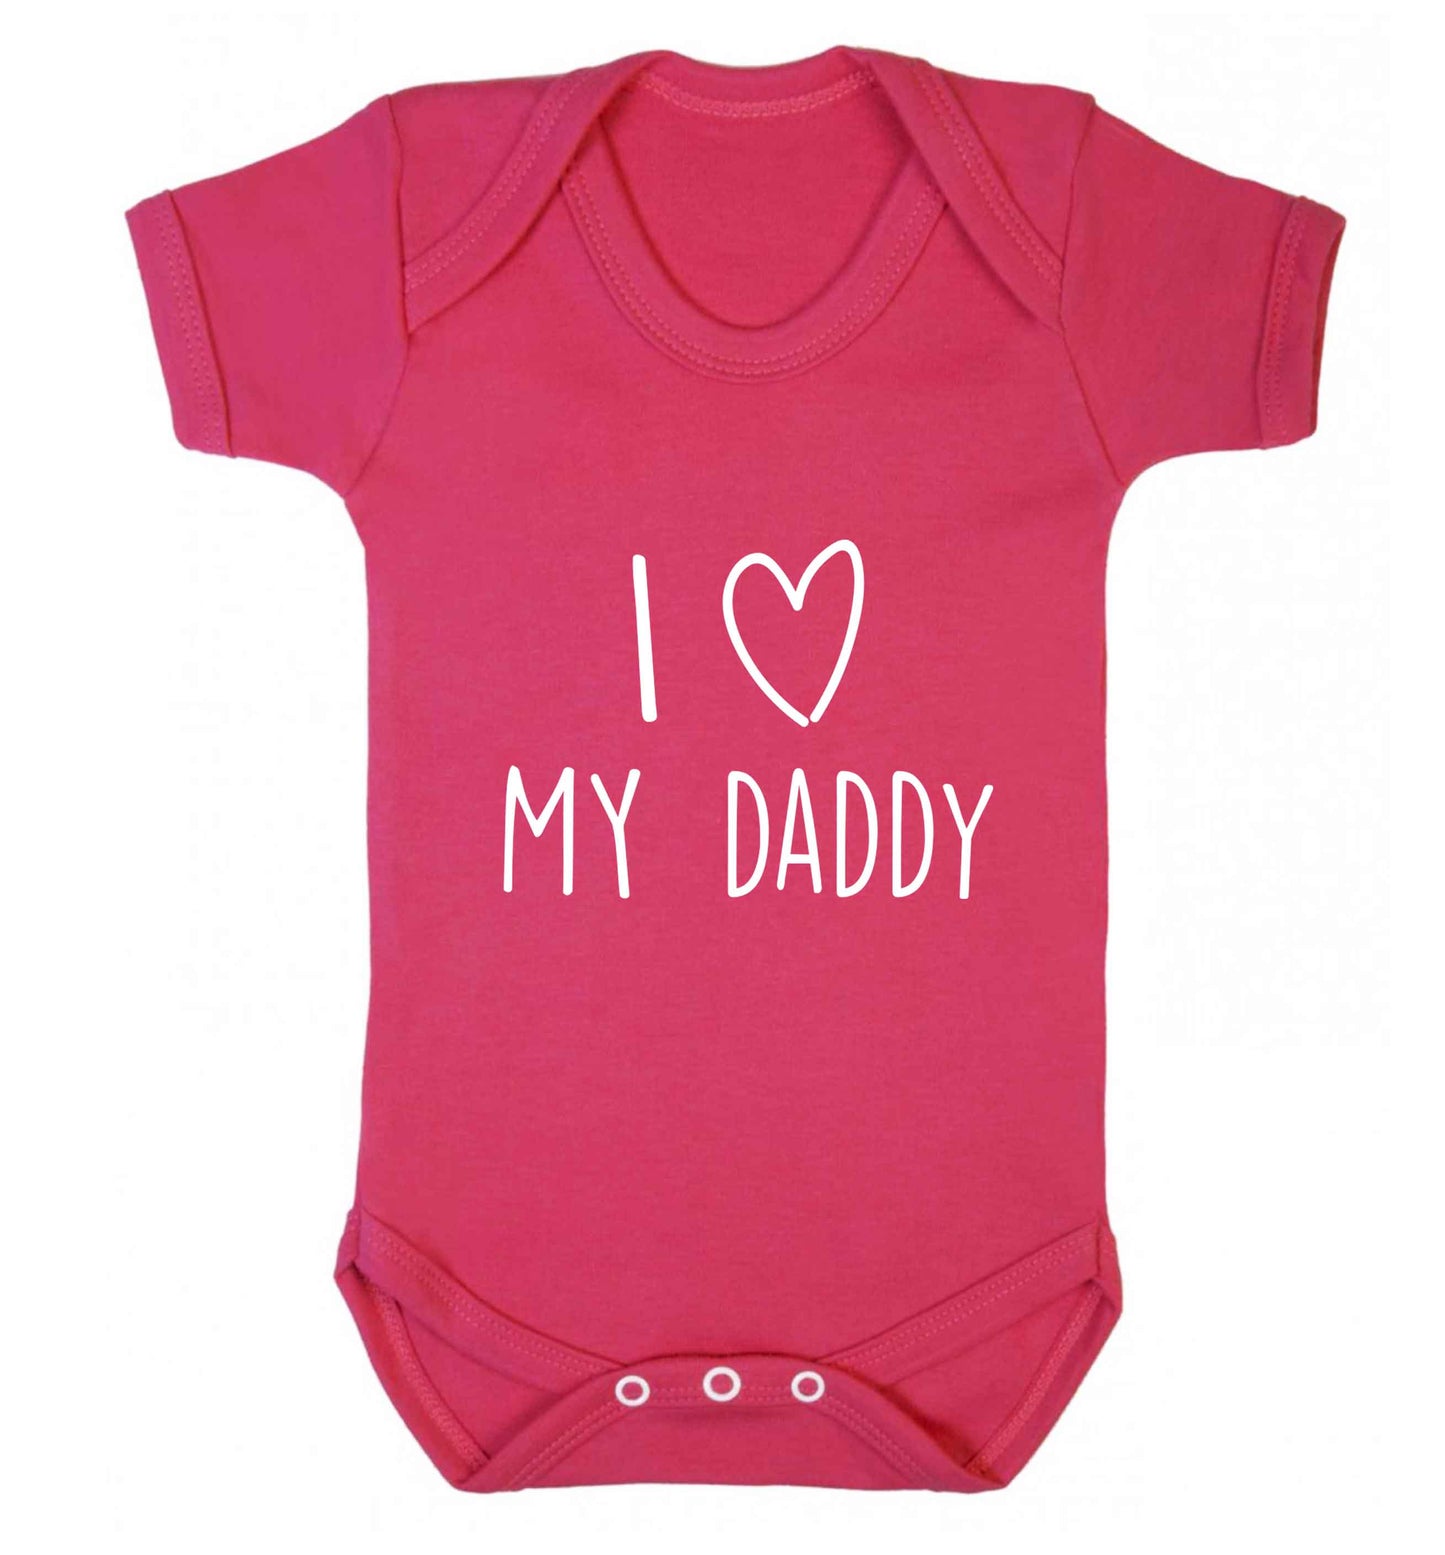 I love my daddy baby vest dark pink 18-24 months